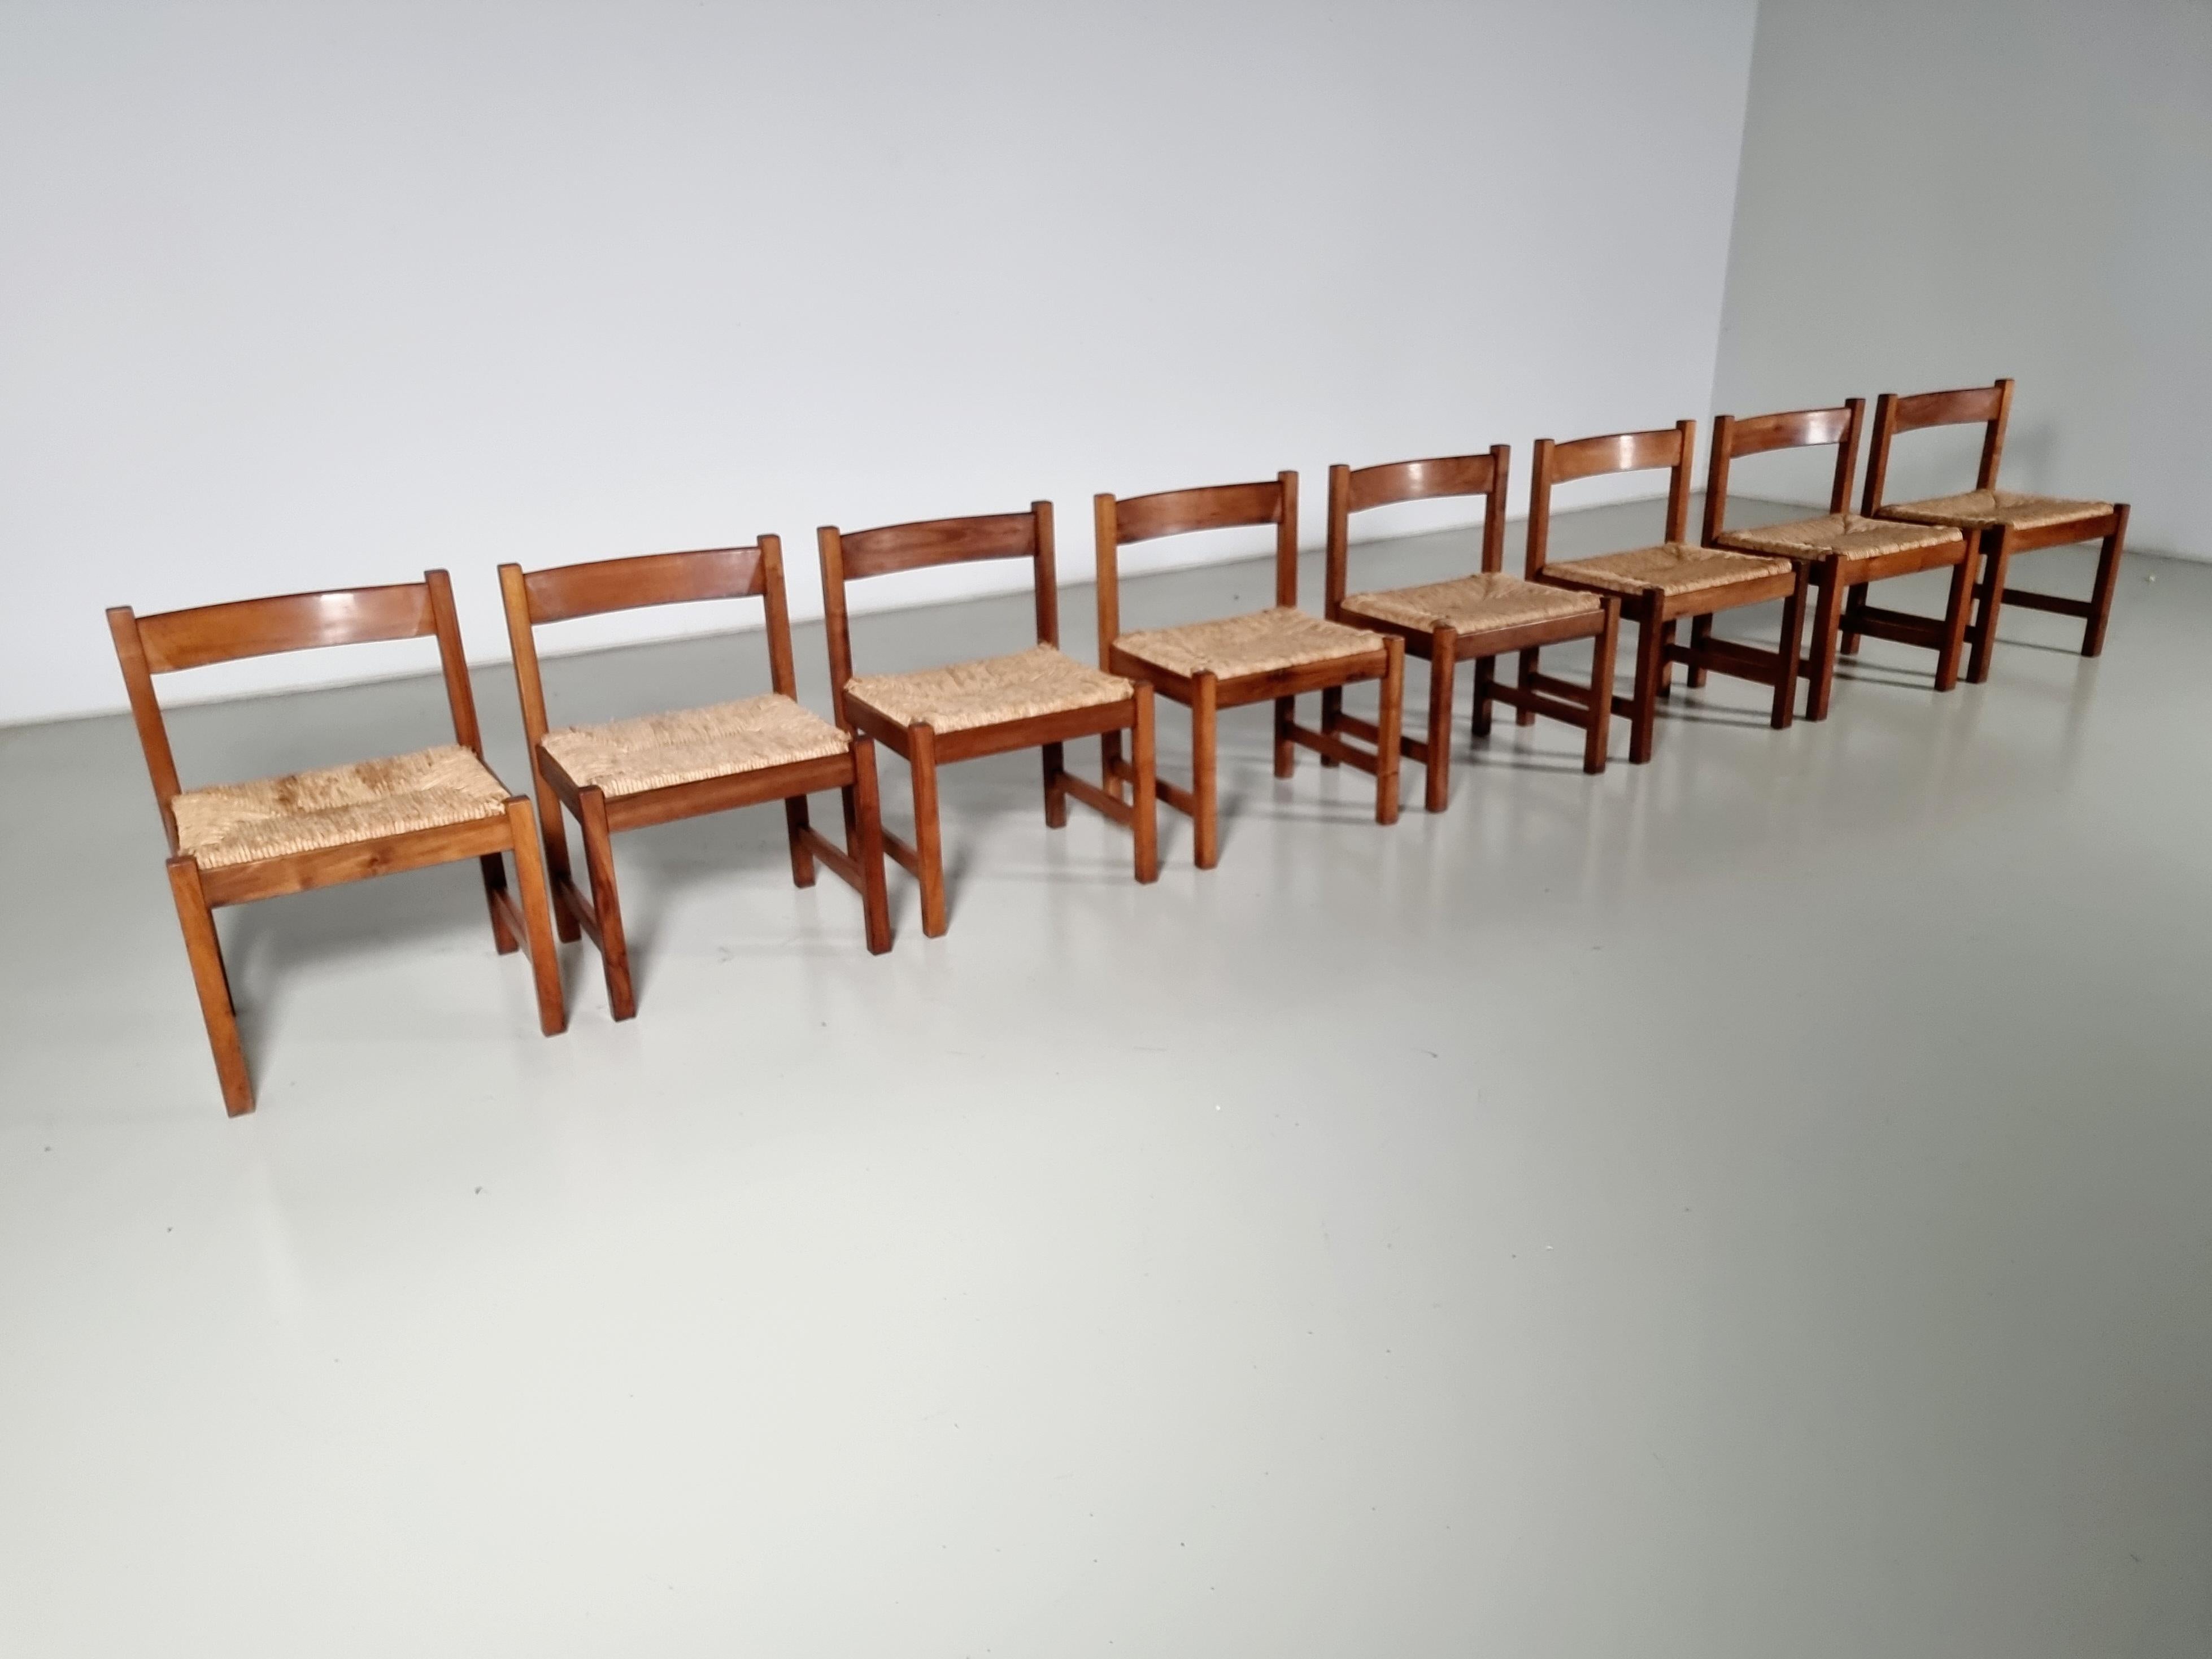 Ensemble de 8 chaises de salle à manger de la série Torbecchia, conçue par Giovanni Michelucci pour Poltronova en 1964.

Structure en noyer massif avec sièges rembourrés en jonc. Les chaises en bois massif ont acquis une patine étonnante au fil des